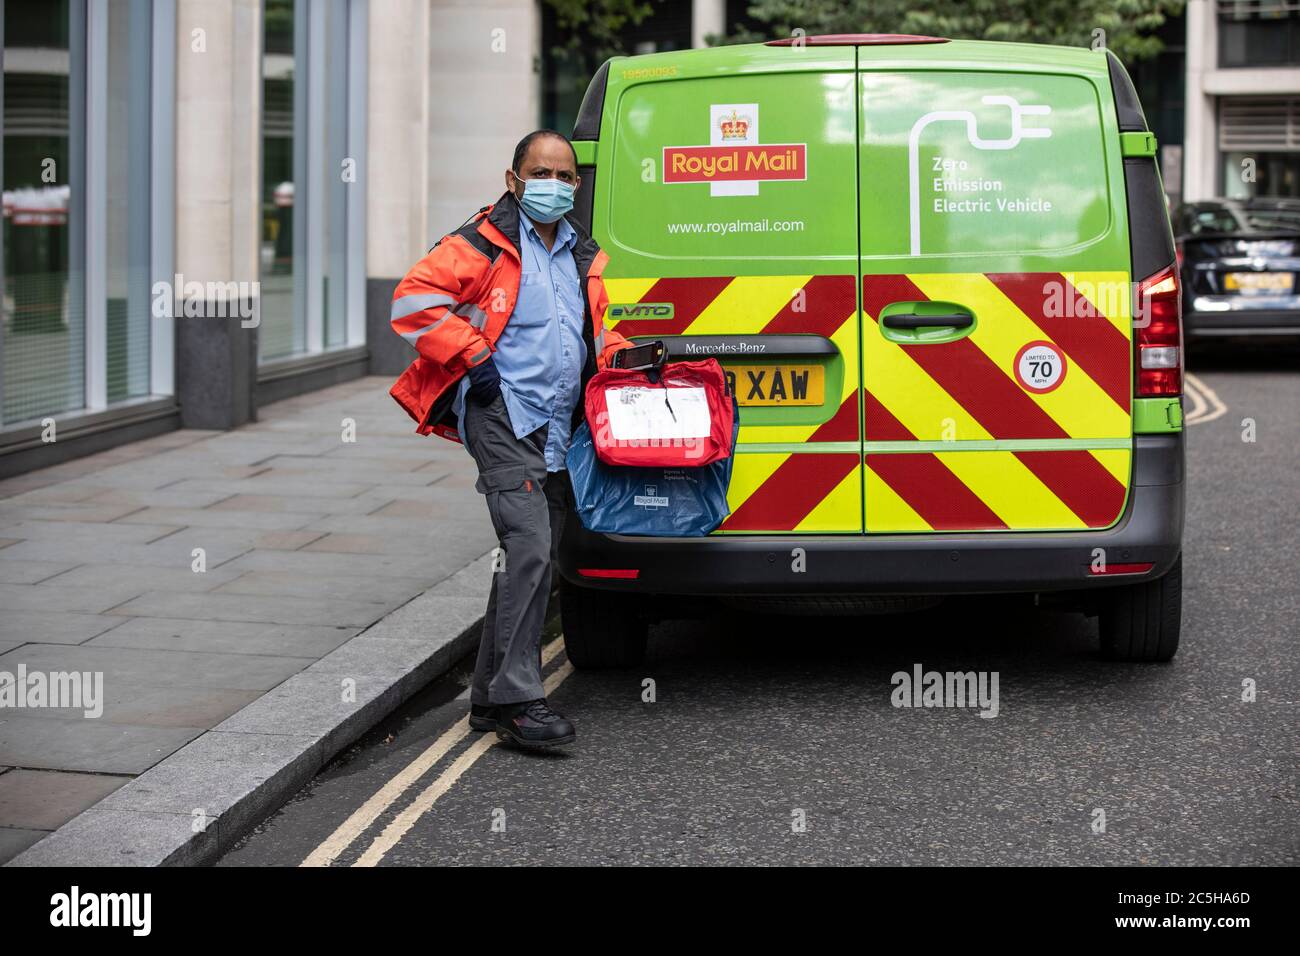 Employé de livraison postale se préparant à charger son Royal Mail Zero Emission Electric postal Van portant un masque facial dans le centre de Londres, Angleterre, Royaume-Uni Banque D'Images